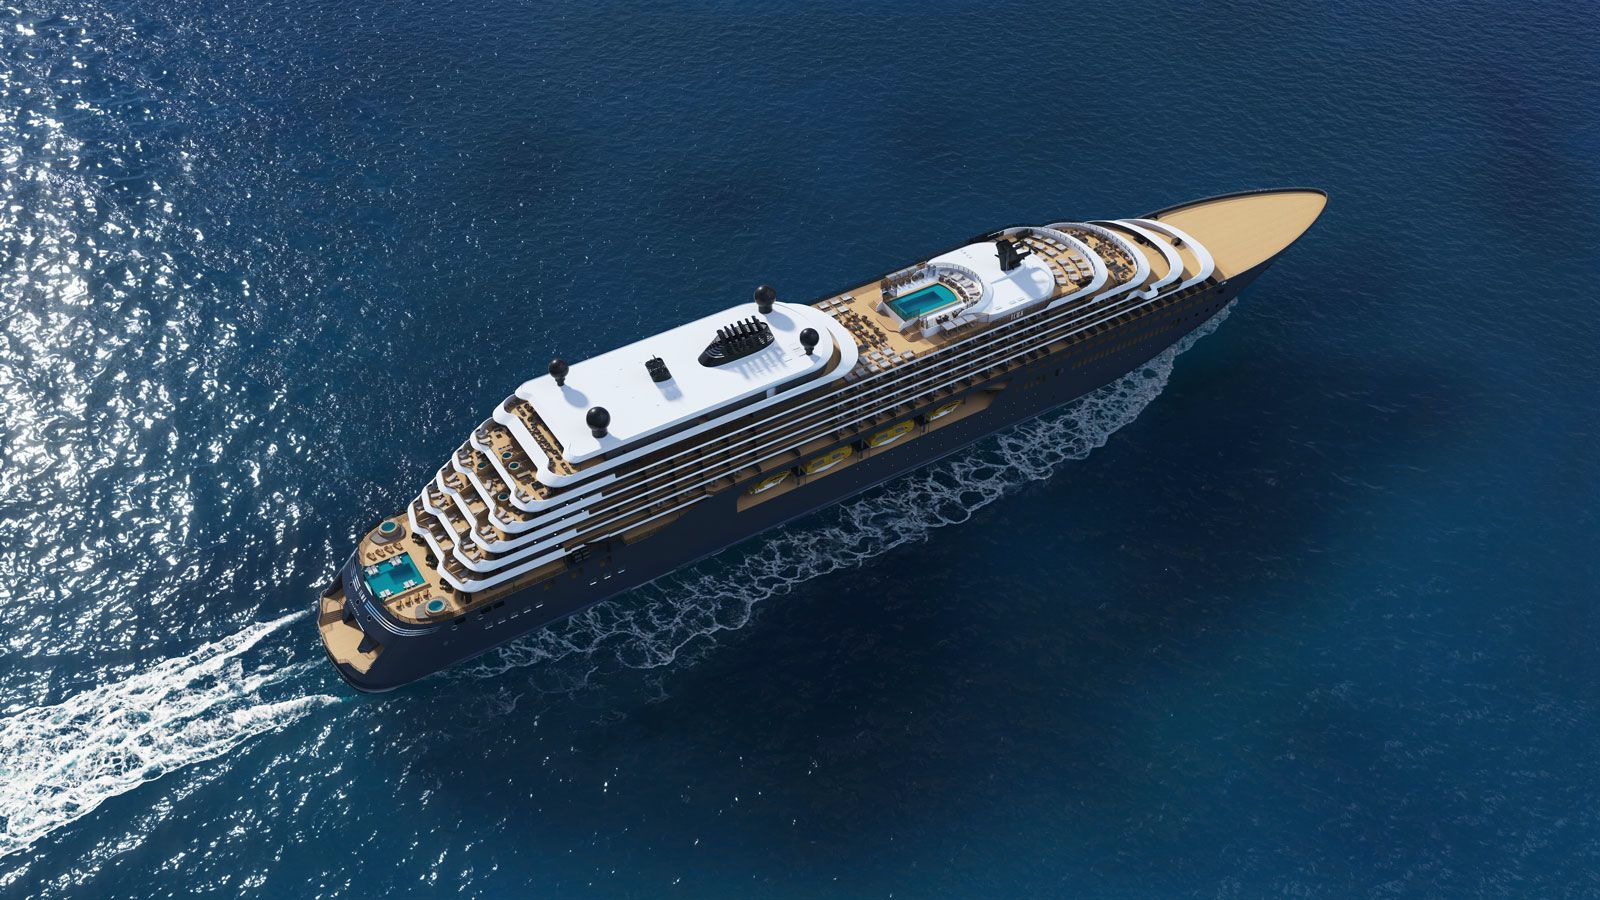 The luxury cruise ship Evrima